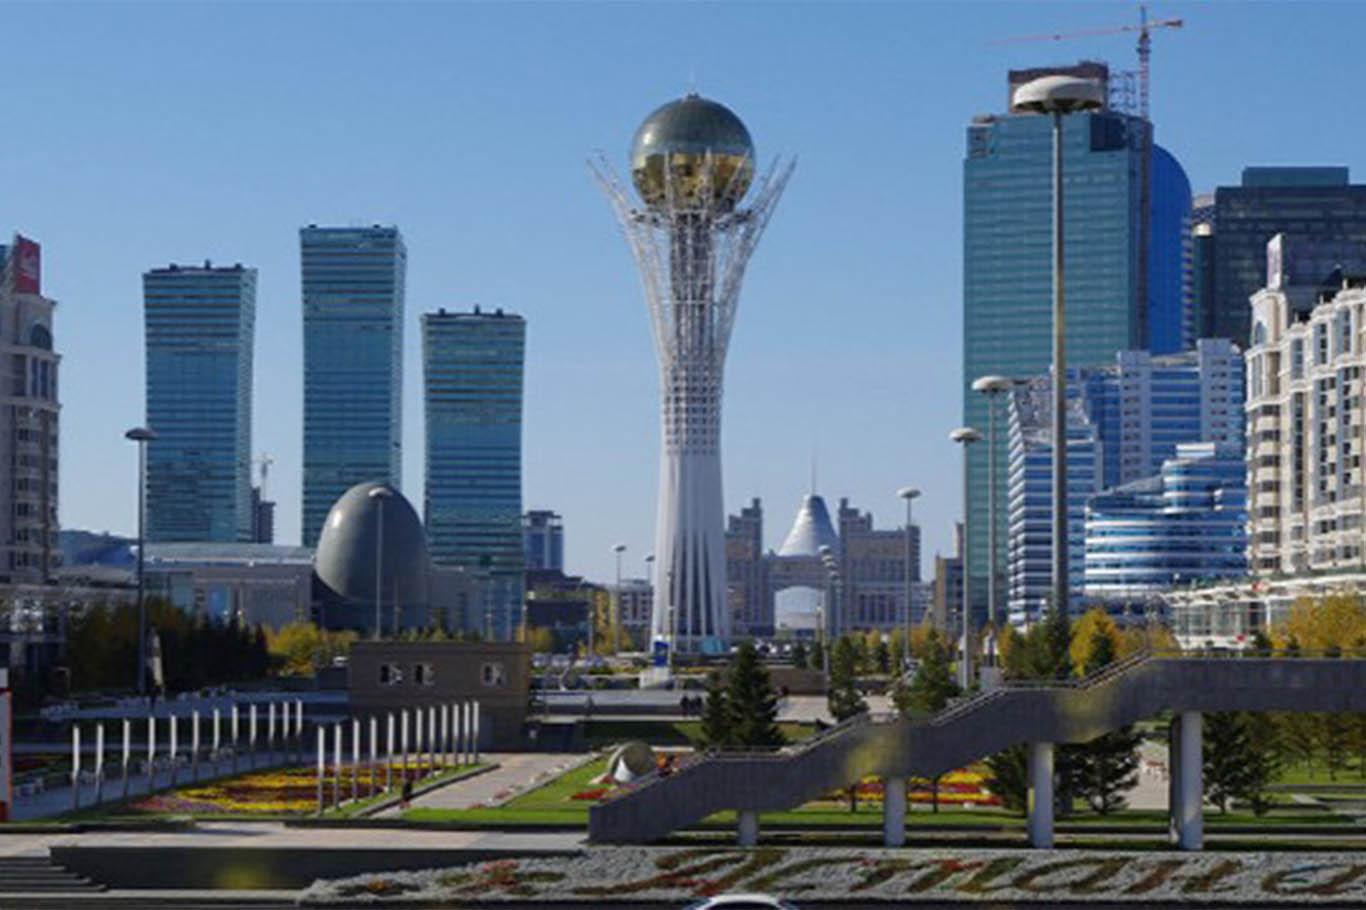 Kazakistan’ın başkenti "Nursultan" olarak değiştirildi